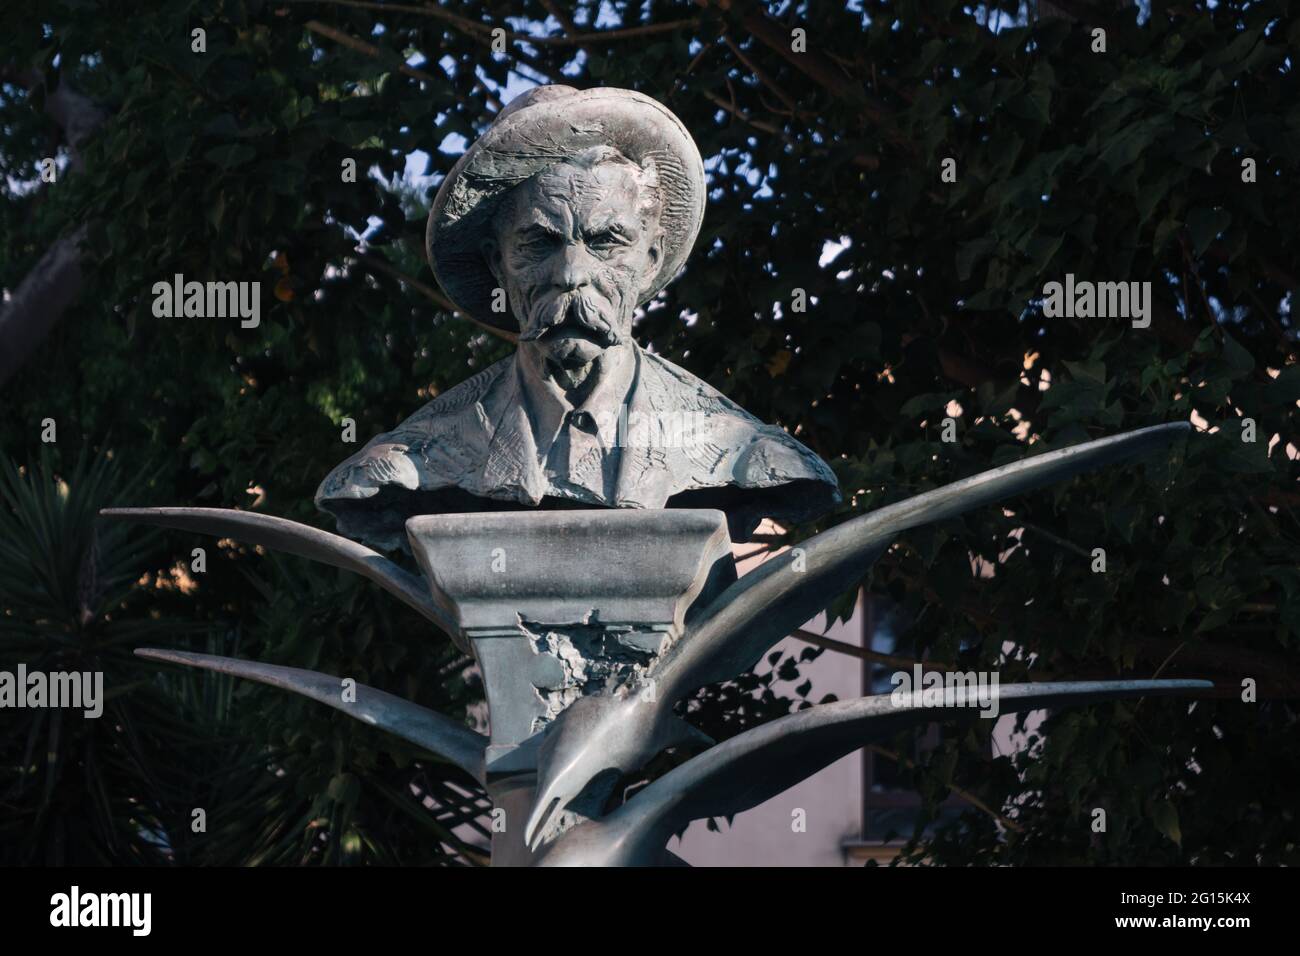 Sorrento, Kampanien, Italien - 26 2020. August: Denkmal des russischen Schriftstellers Maxim Gorki, Bronzestatue des berühmten Autors. Stockfoto